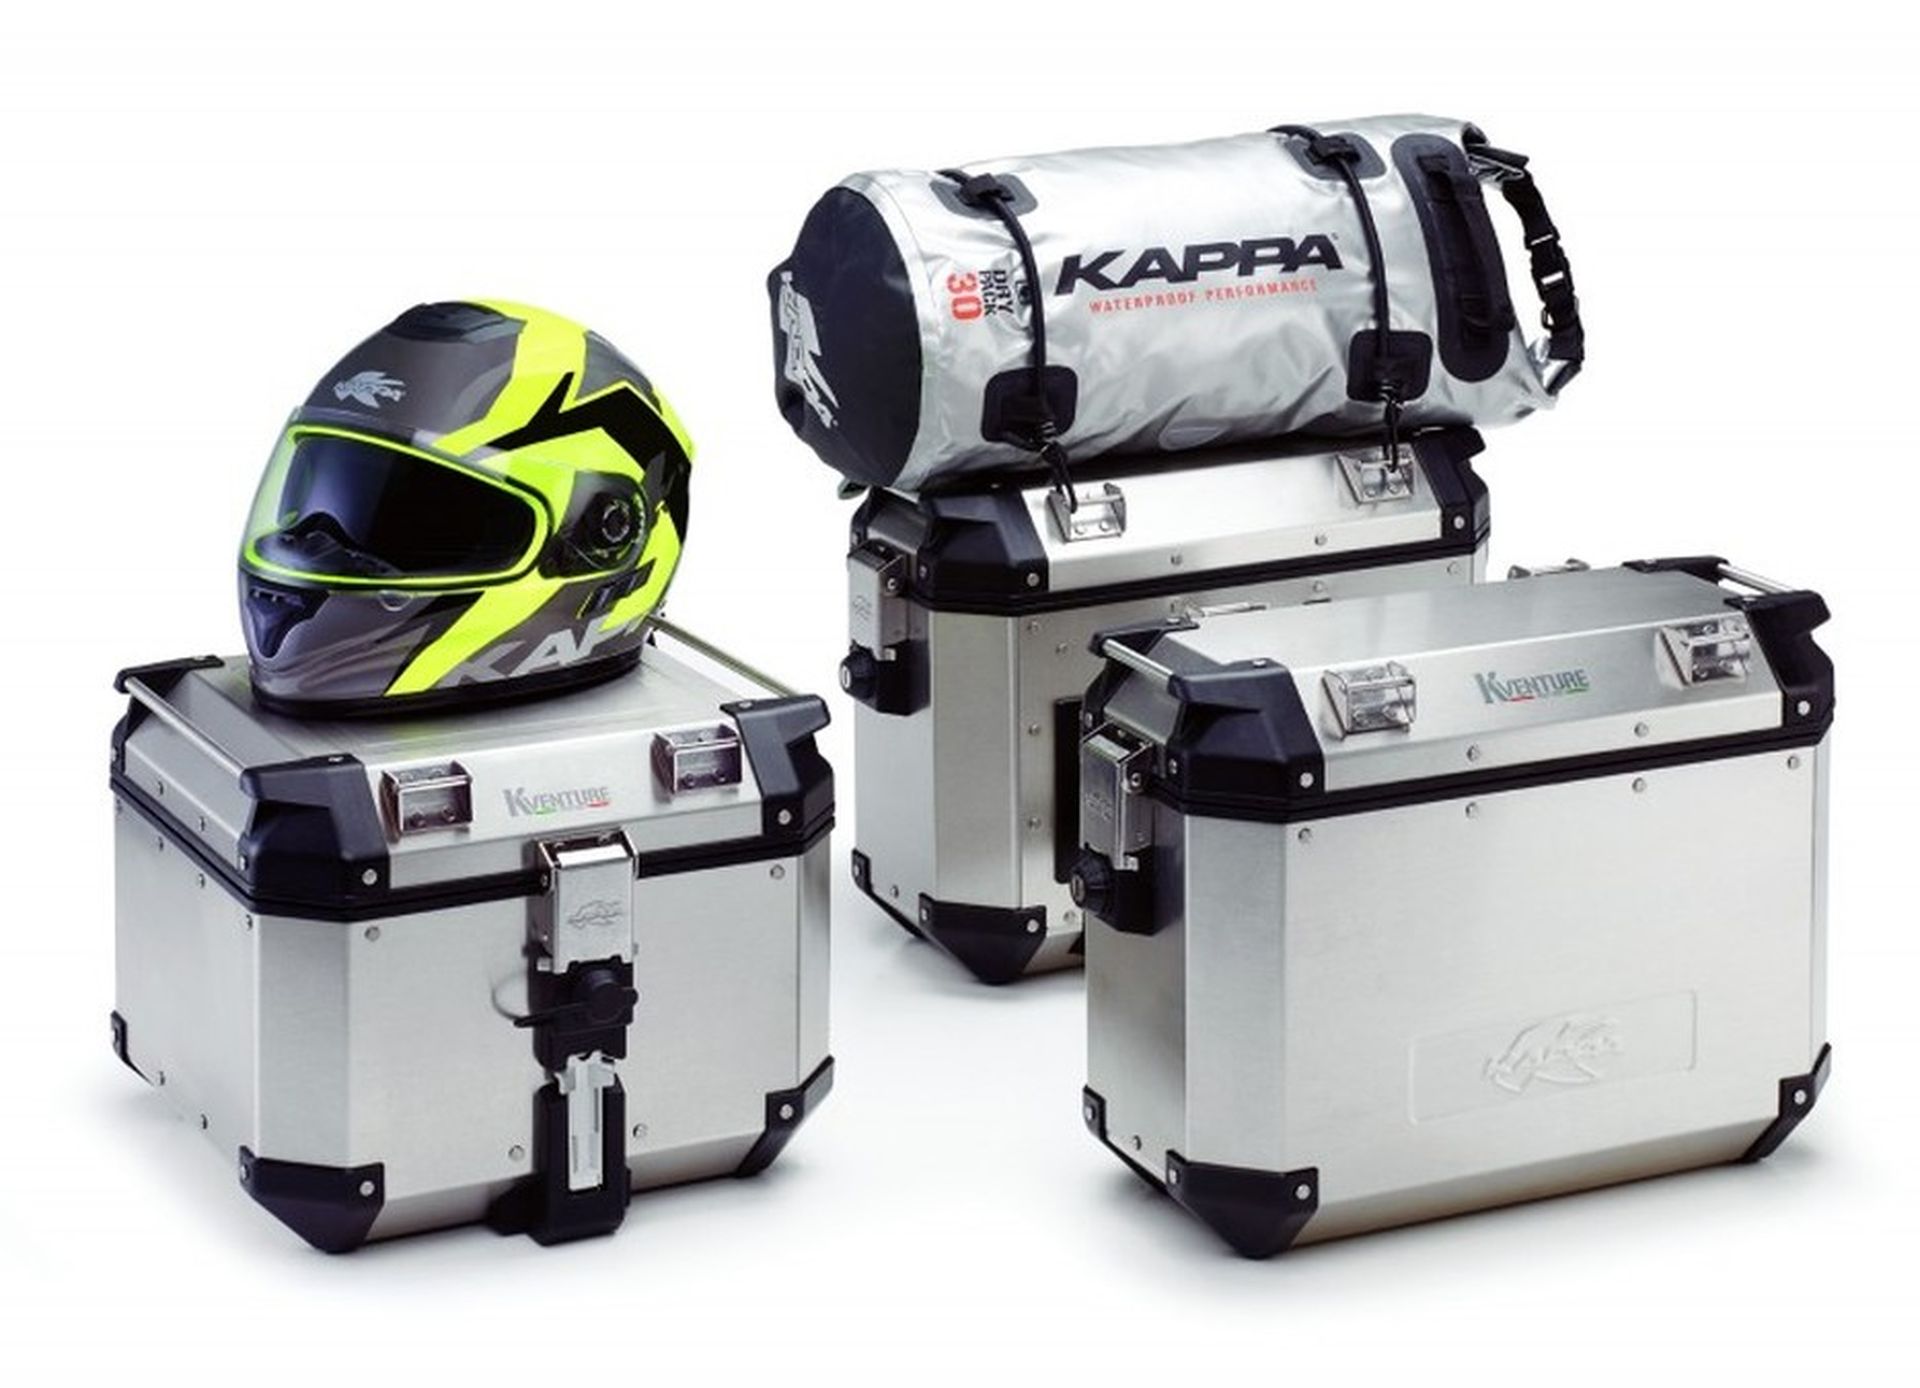 Maletas moto Kappa aluminio con bolsa y casco